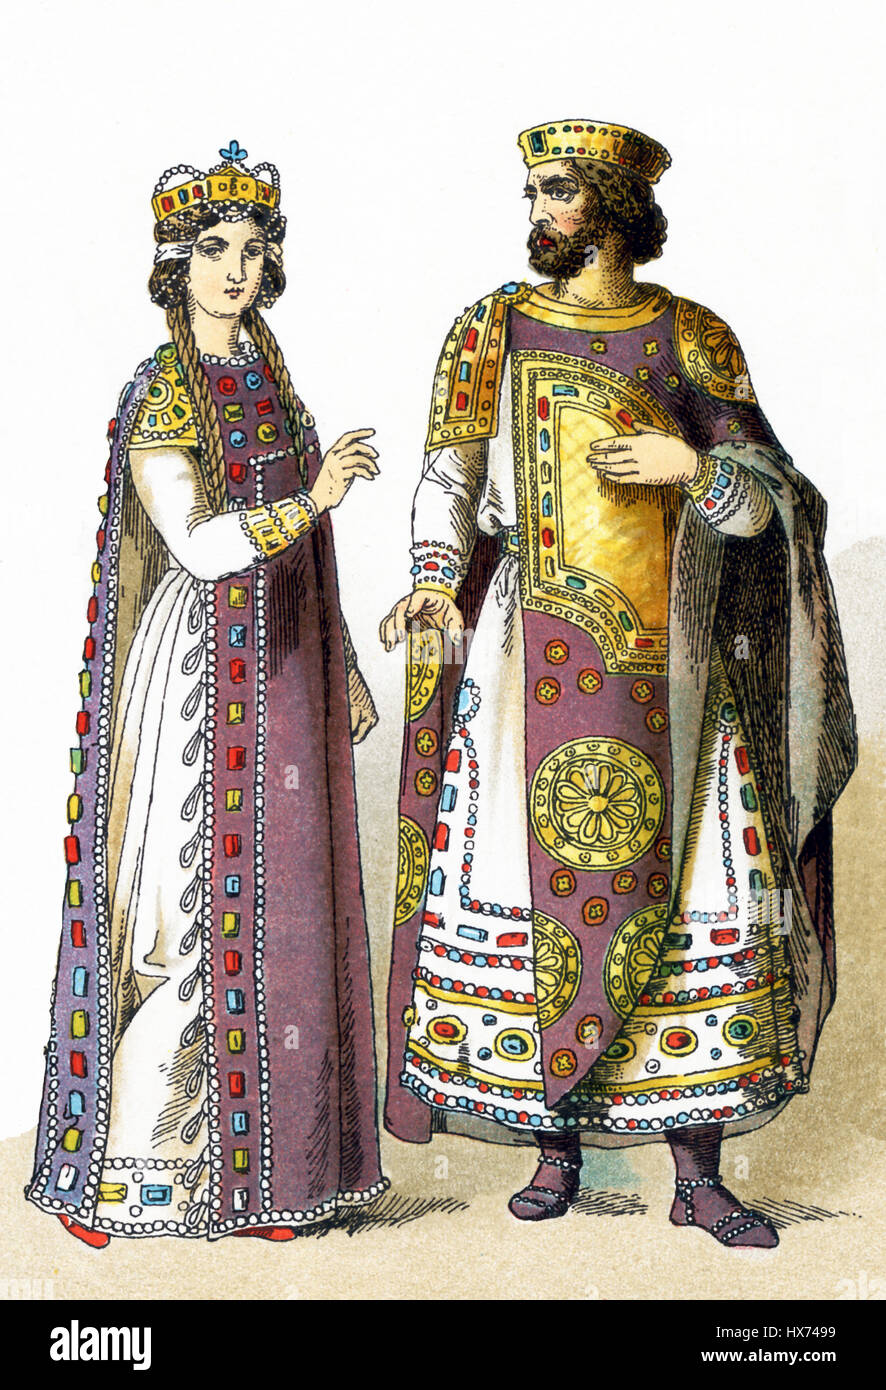 L'illustration met en évidence ici royals byzantin entre 800 et l'AN 1000 De gauche à droite, ils sont une impératrice byzantine et d'un empereur byzantin. L'illustration dates à 1882. Banque D'Images